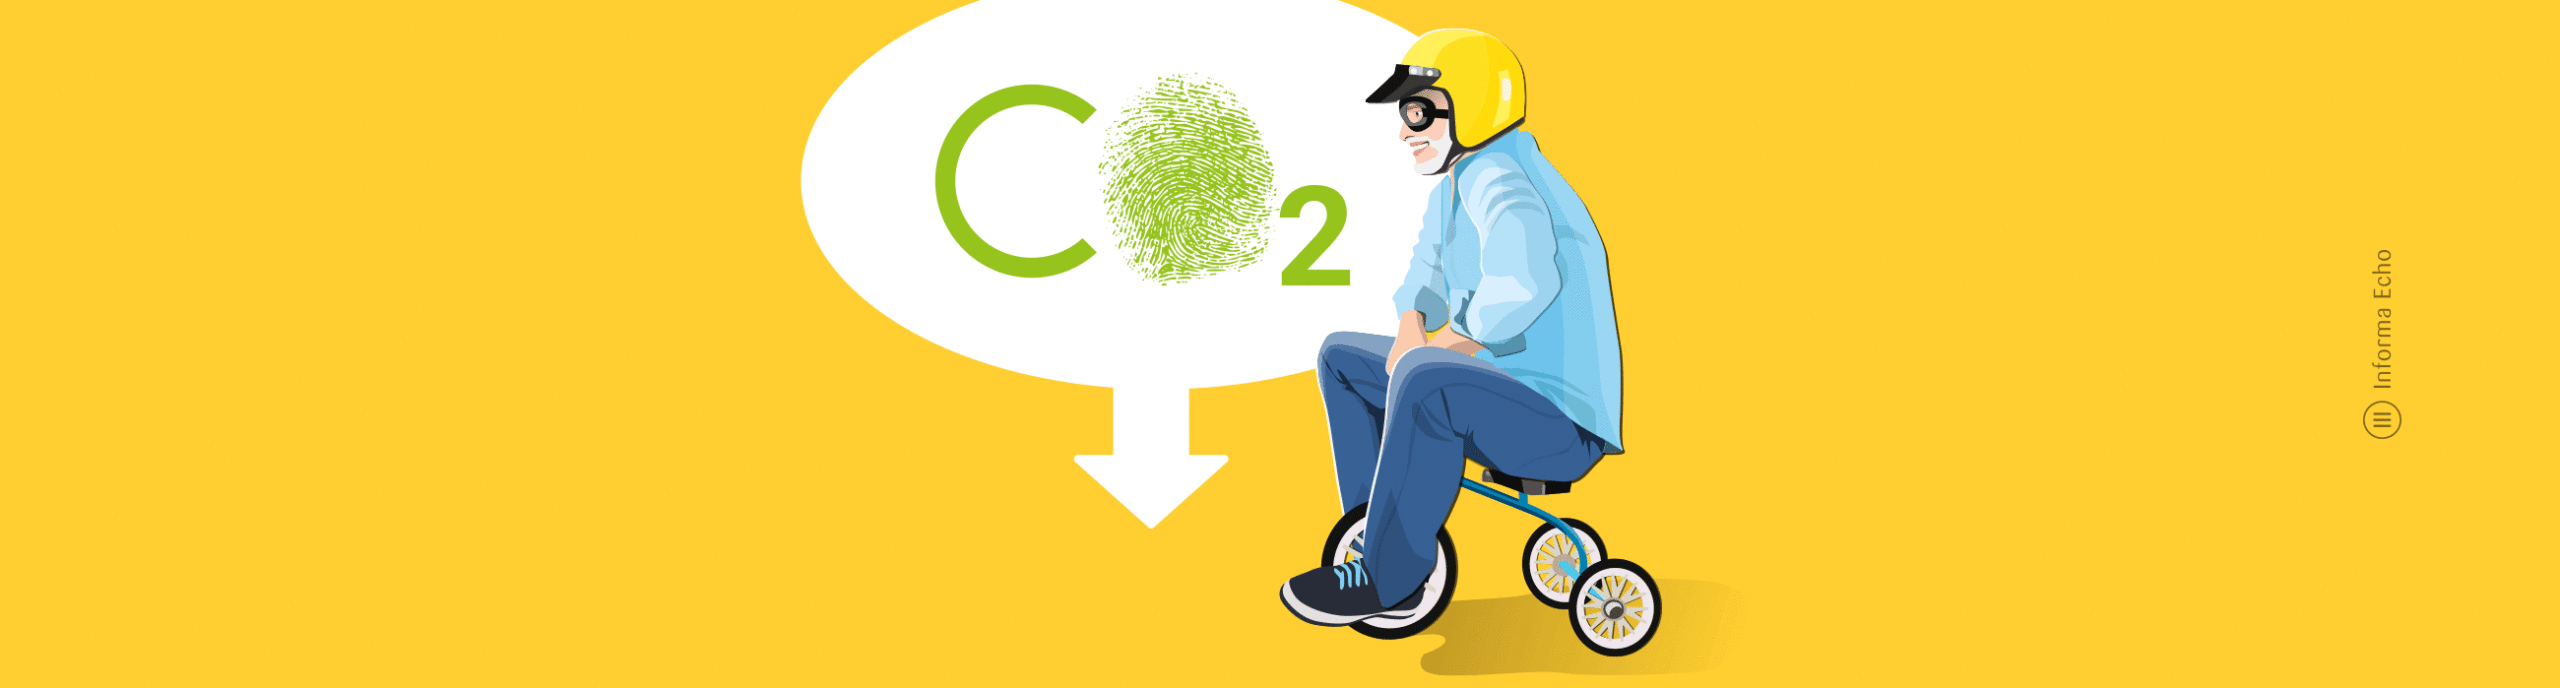 7 idej za zmanjšanje osebnega ogljičnega odtisa v prevozu / Pozitivna energija / Ilustracija: Branko Baćović